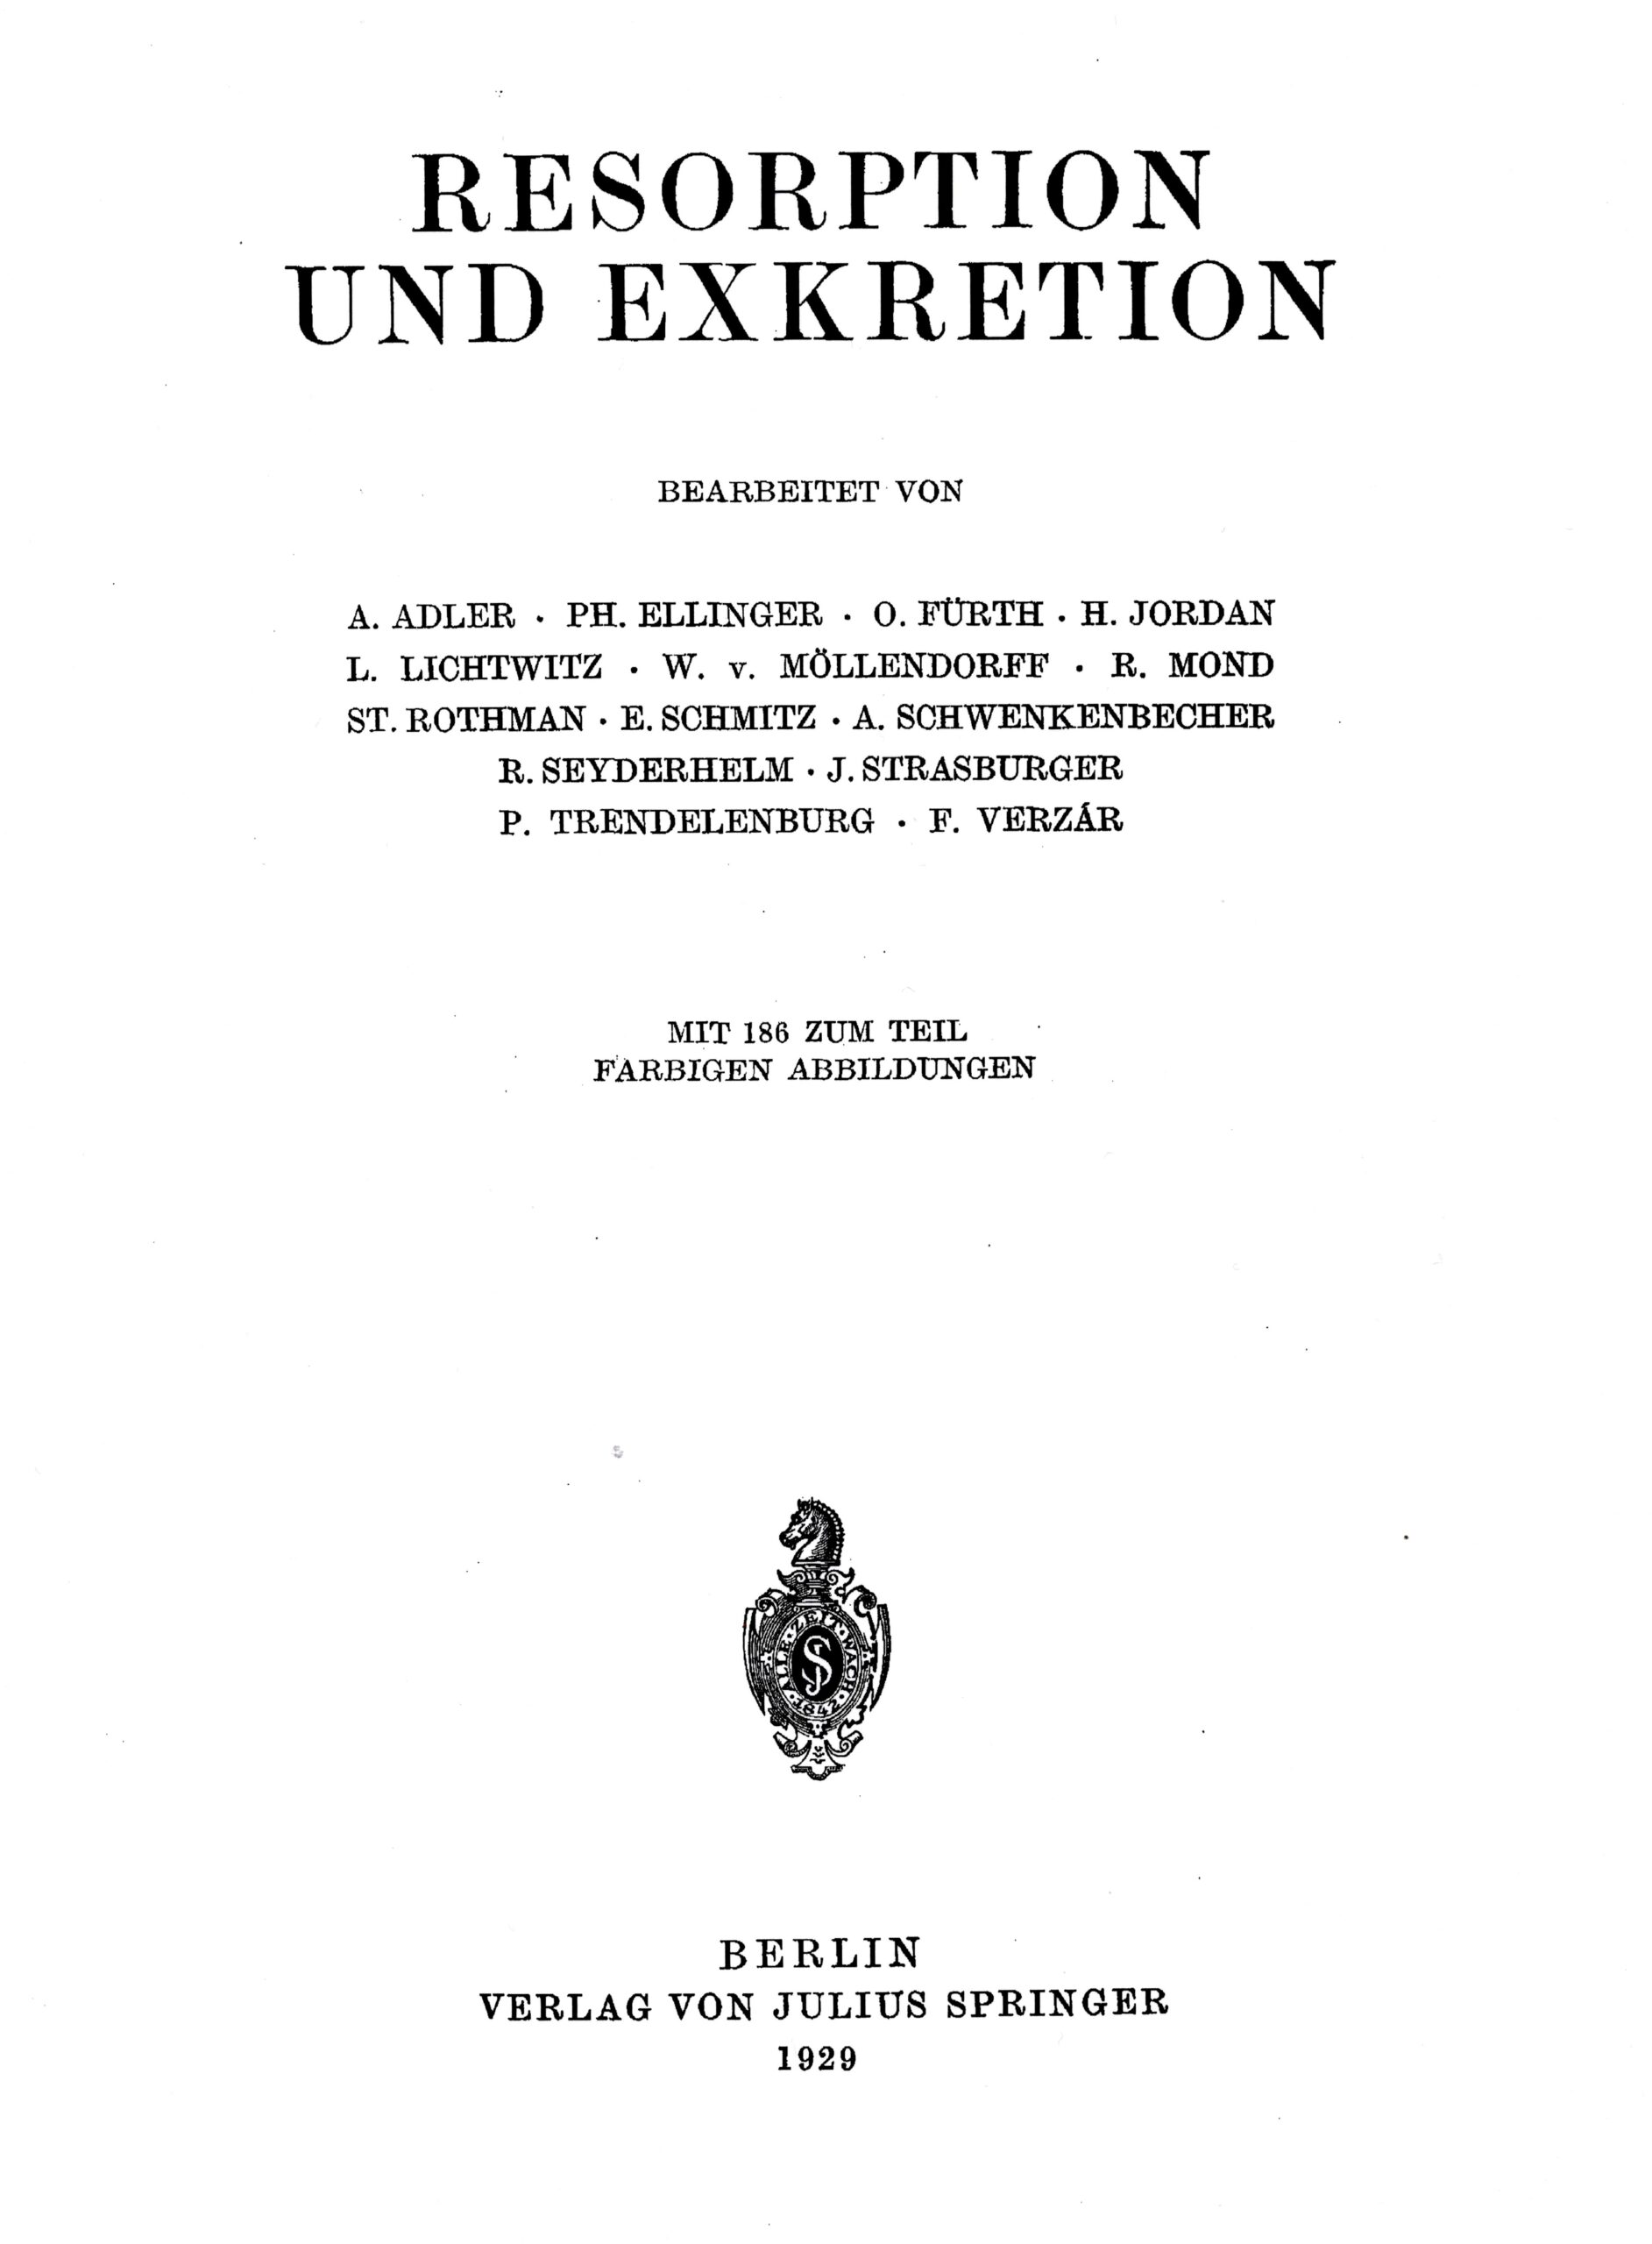 Volume IV, Handbuch der normalen und pathologischen Physiologie 1929